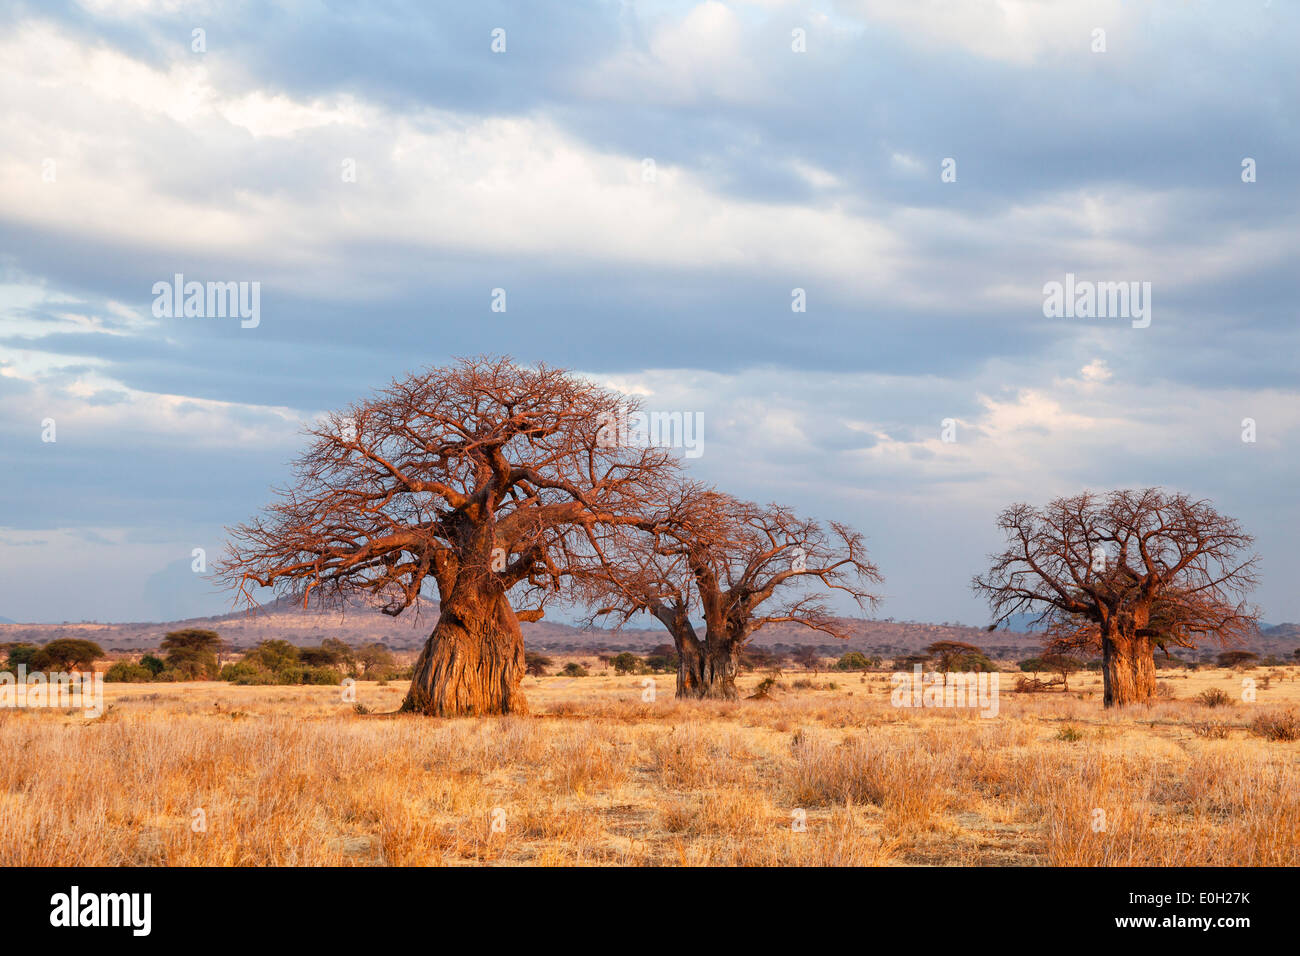 Los baobabs africanos al atardecer, Adansonia digitata, el Parque nacional Ruaha, Tanzania, África Foto de stock